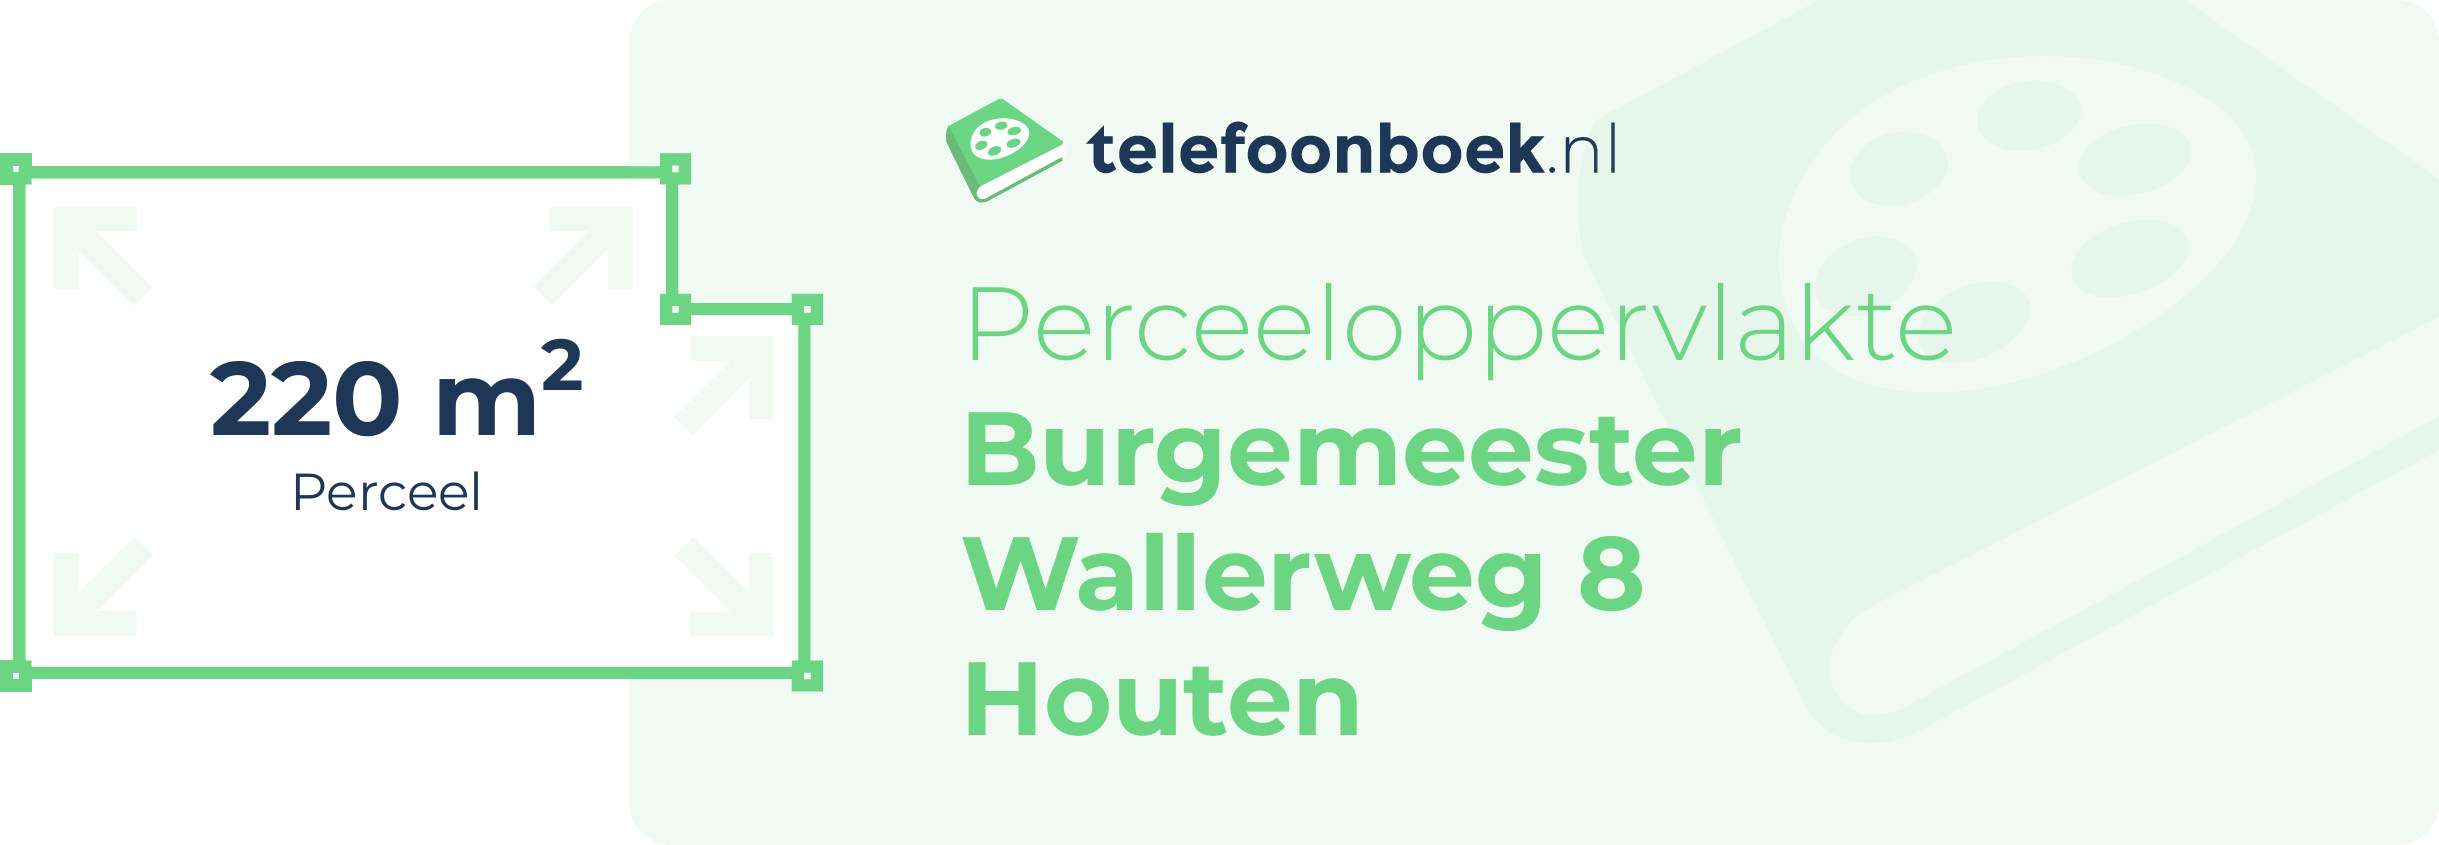 Perceeloppervlakte Burgemeester Wallerweg 8 Houten